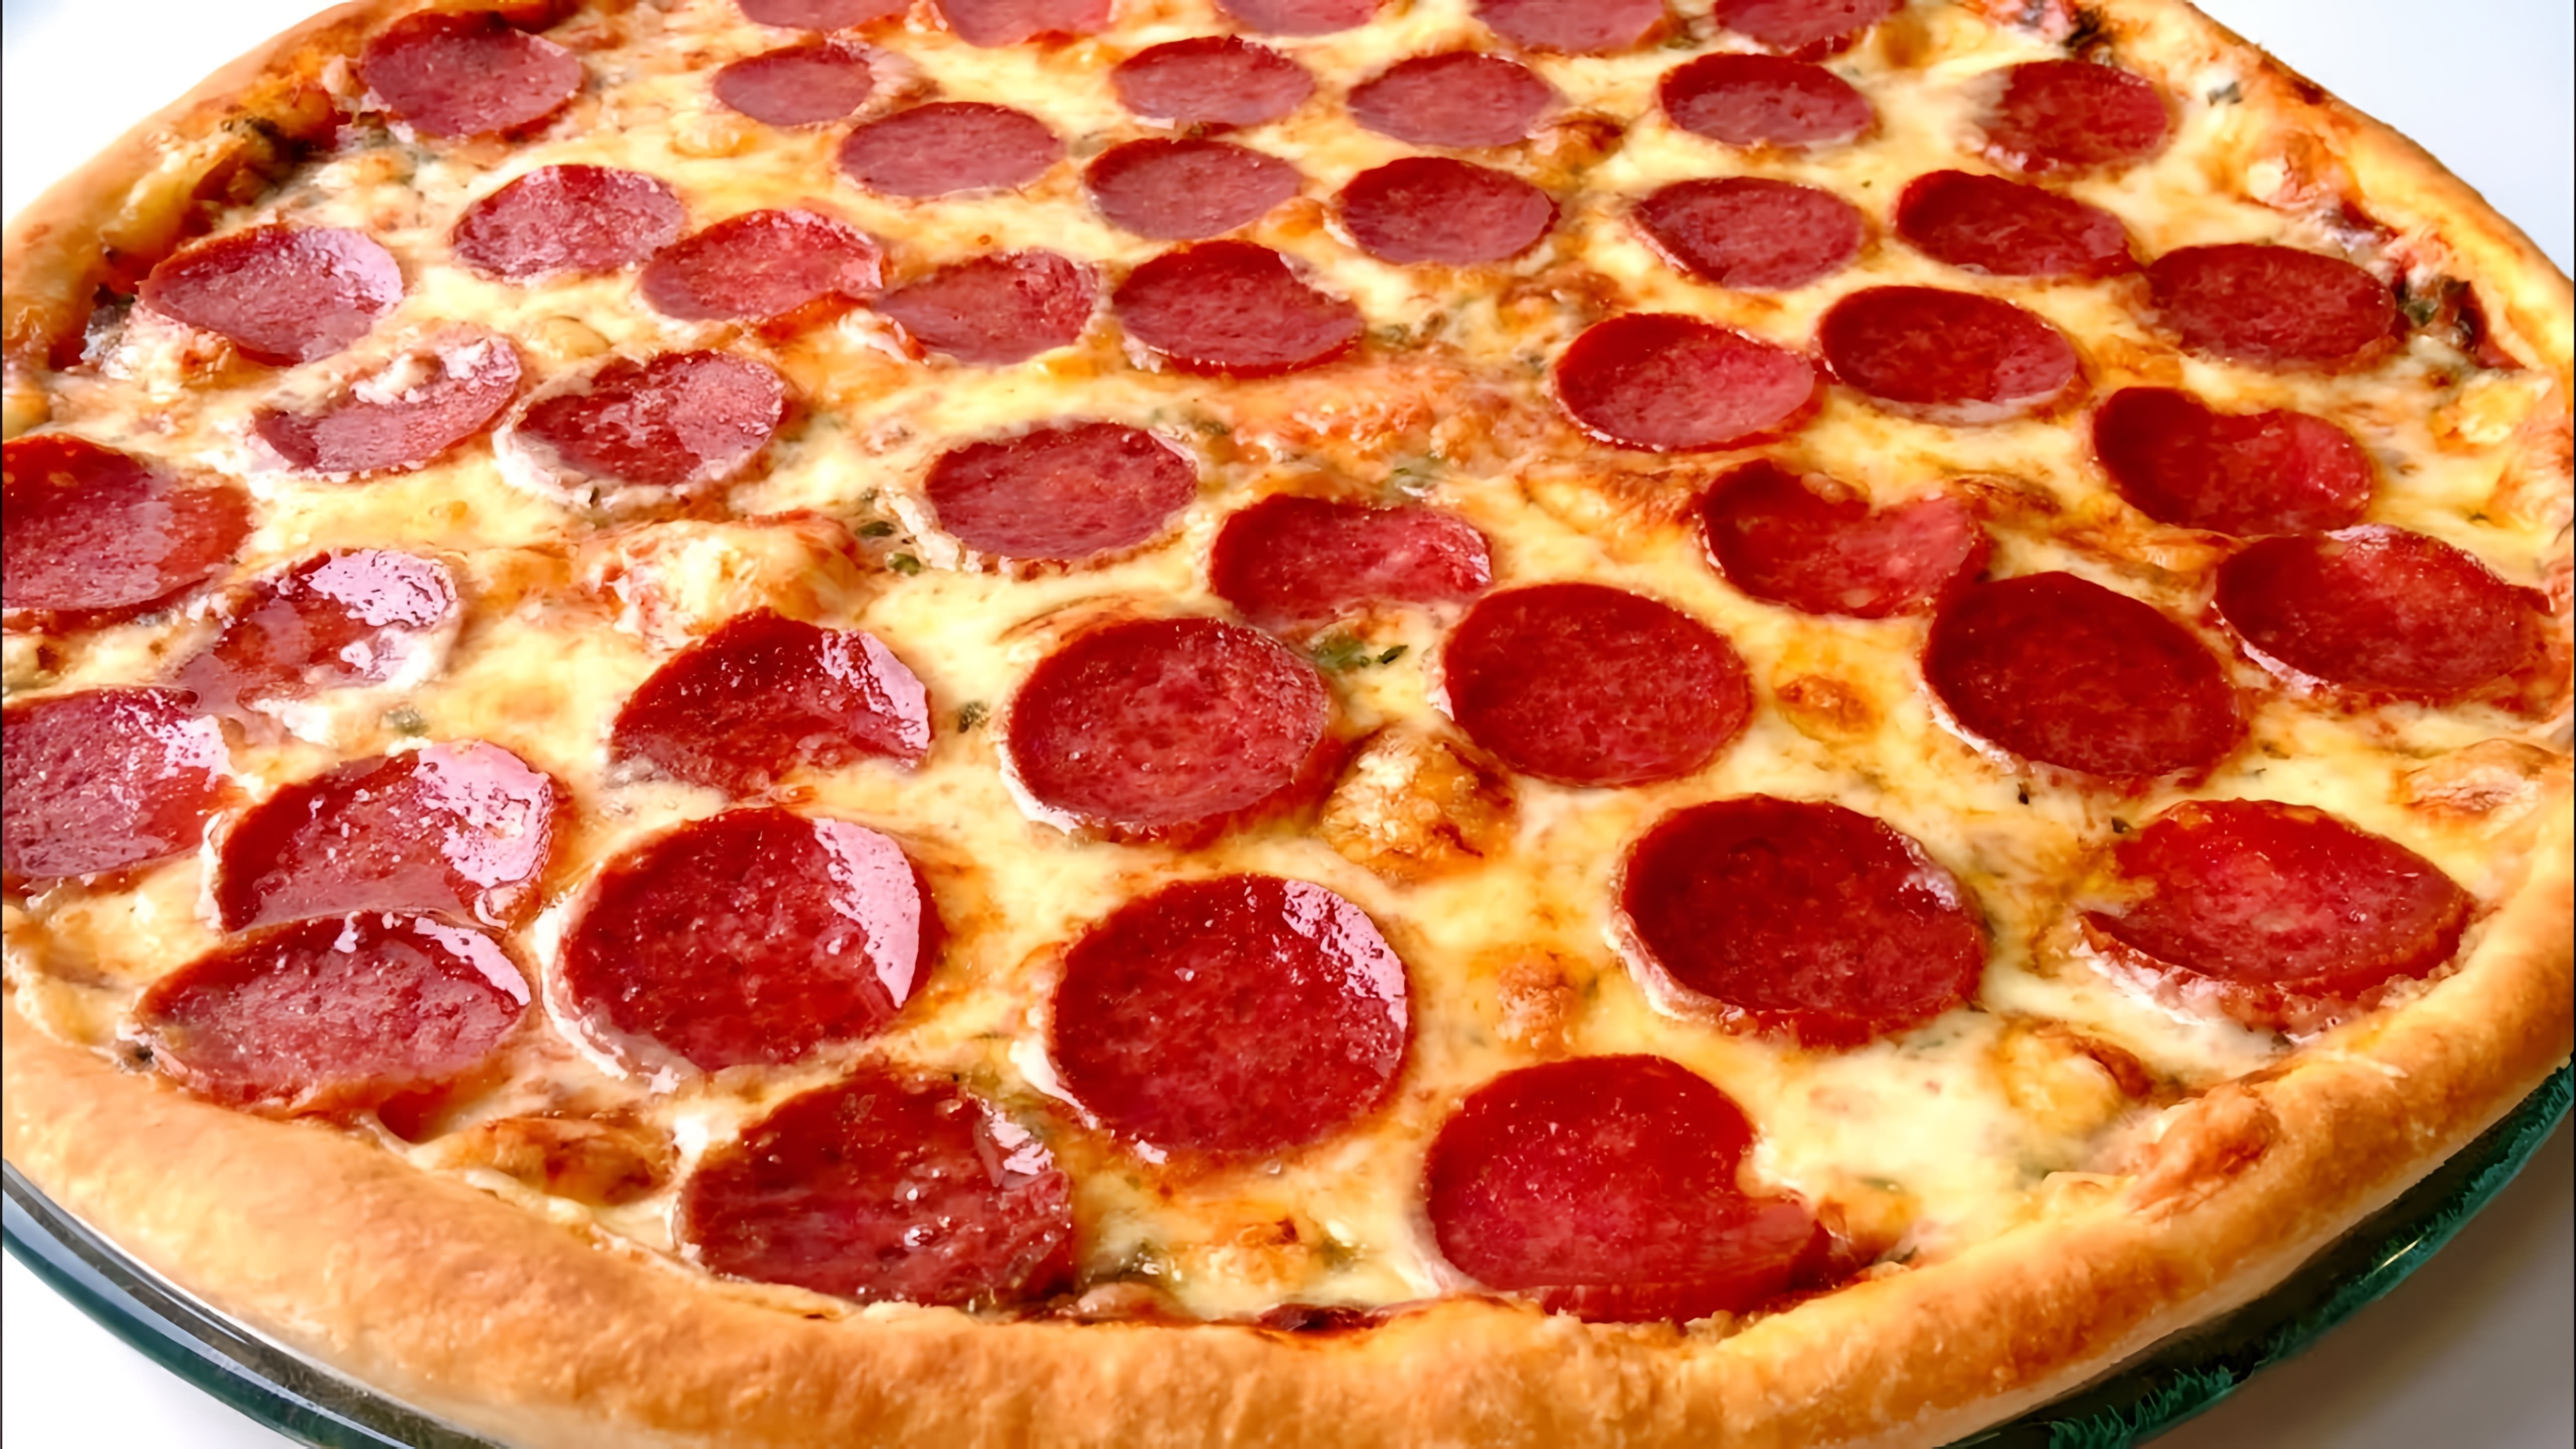 В этом видео демонстрируется процесс приготовления пиццы "Пепперони" в домашних условиях